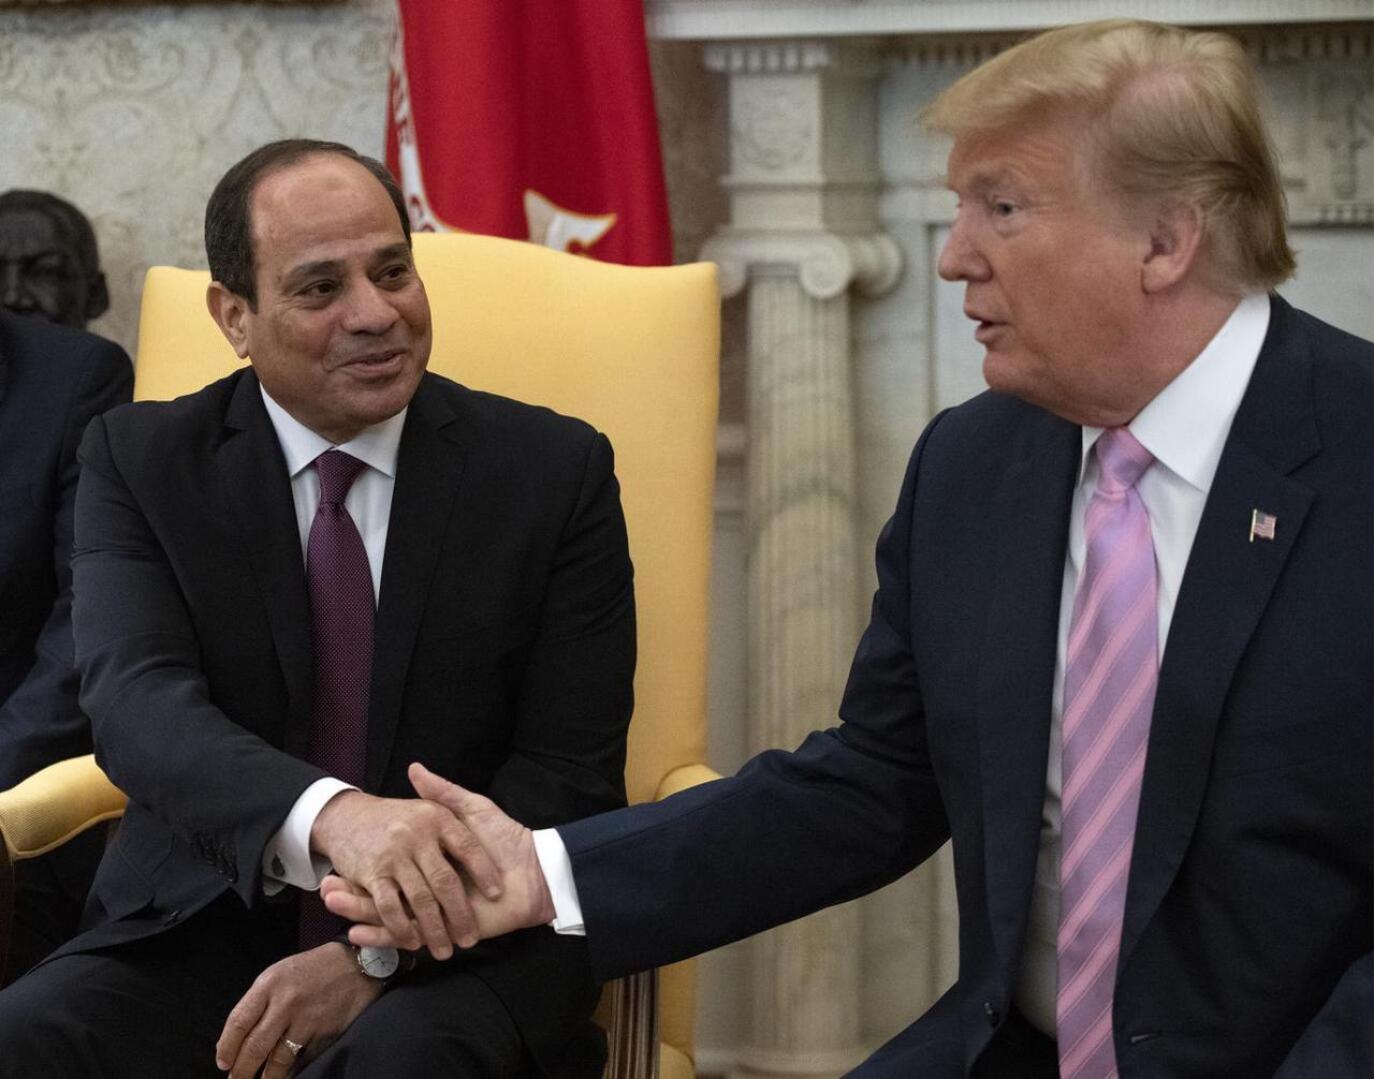 Egyptin presidentti Abdel Fattah al-Sisi tapasi viikko sitten Yhdysvaltojen presidentti Donald Trumpin Washingtonissa.